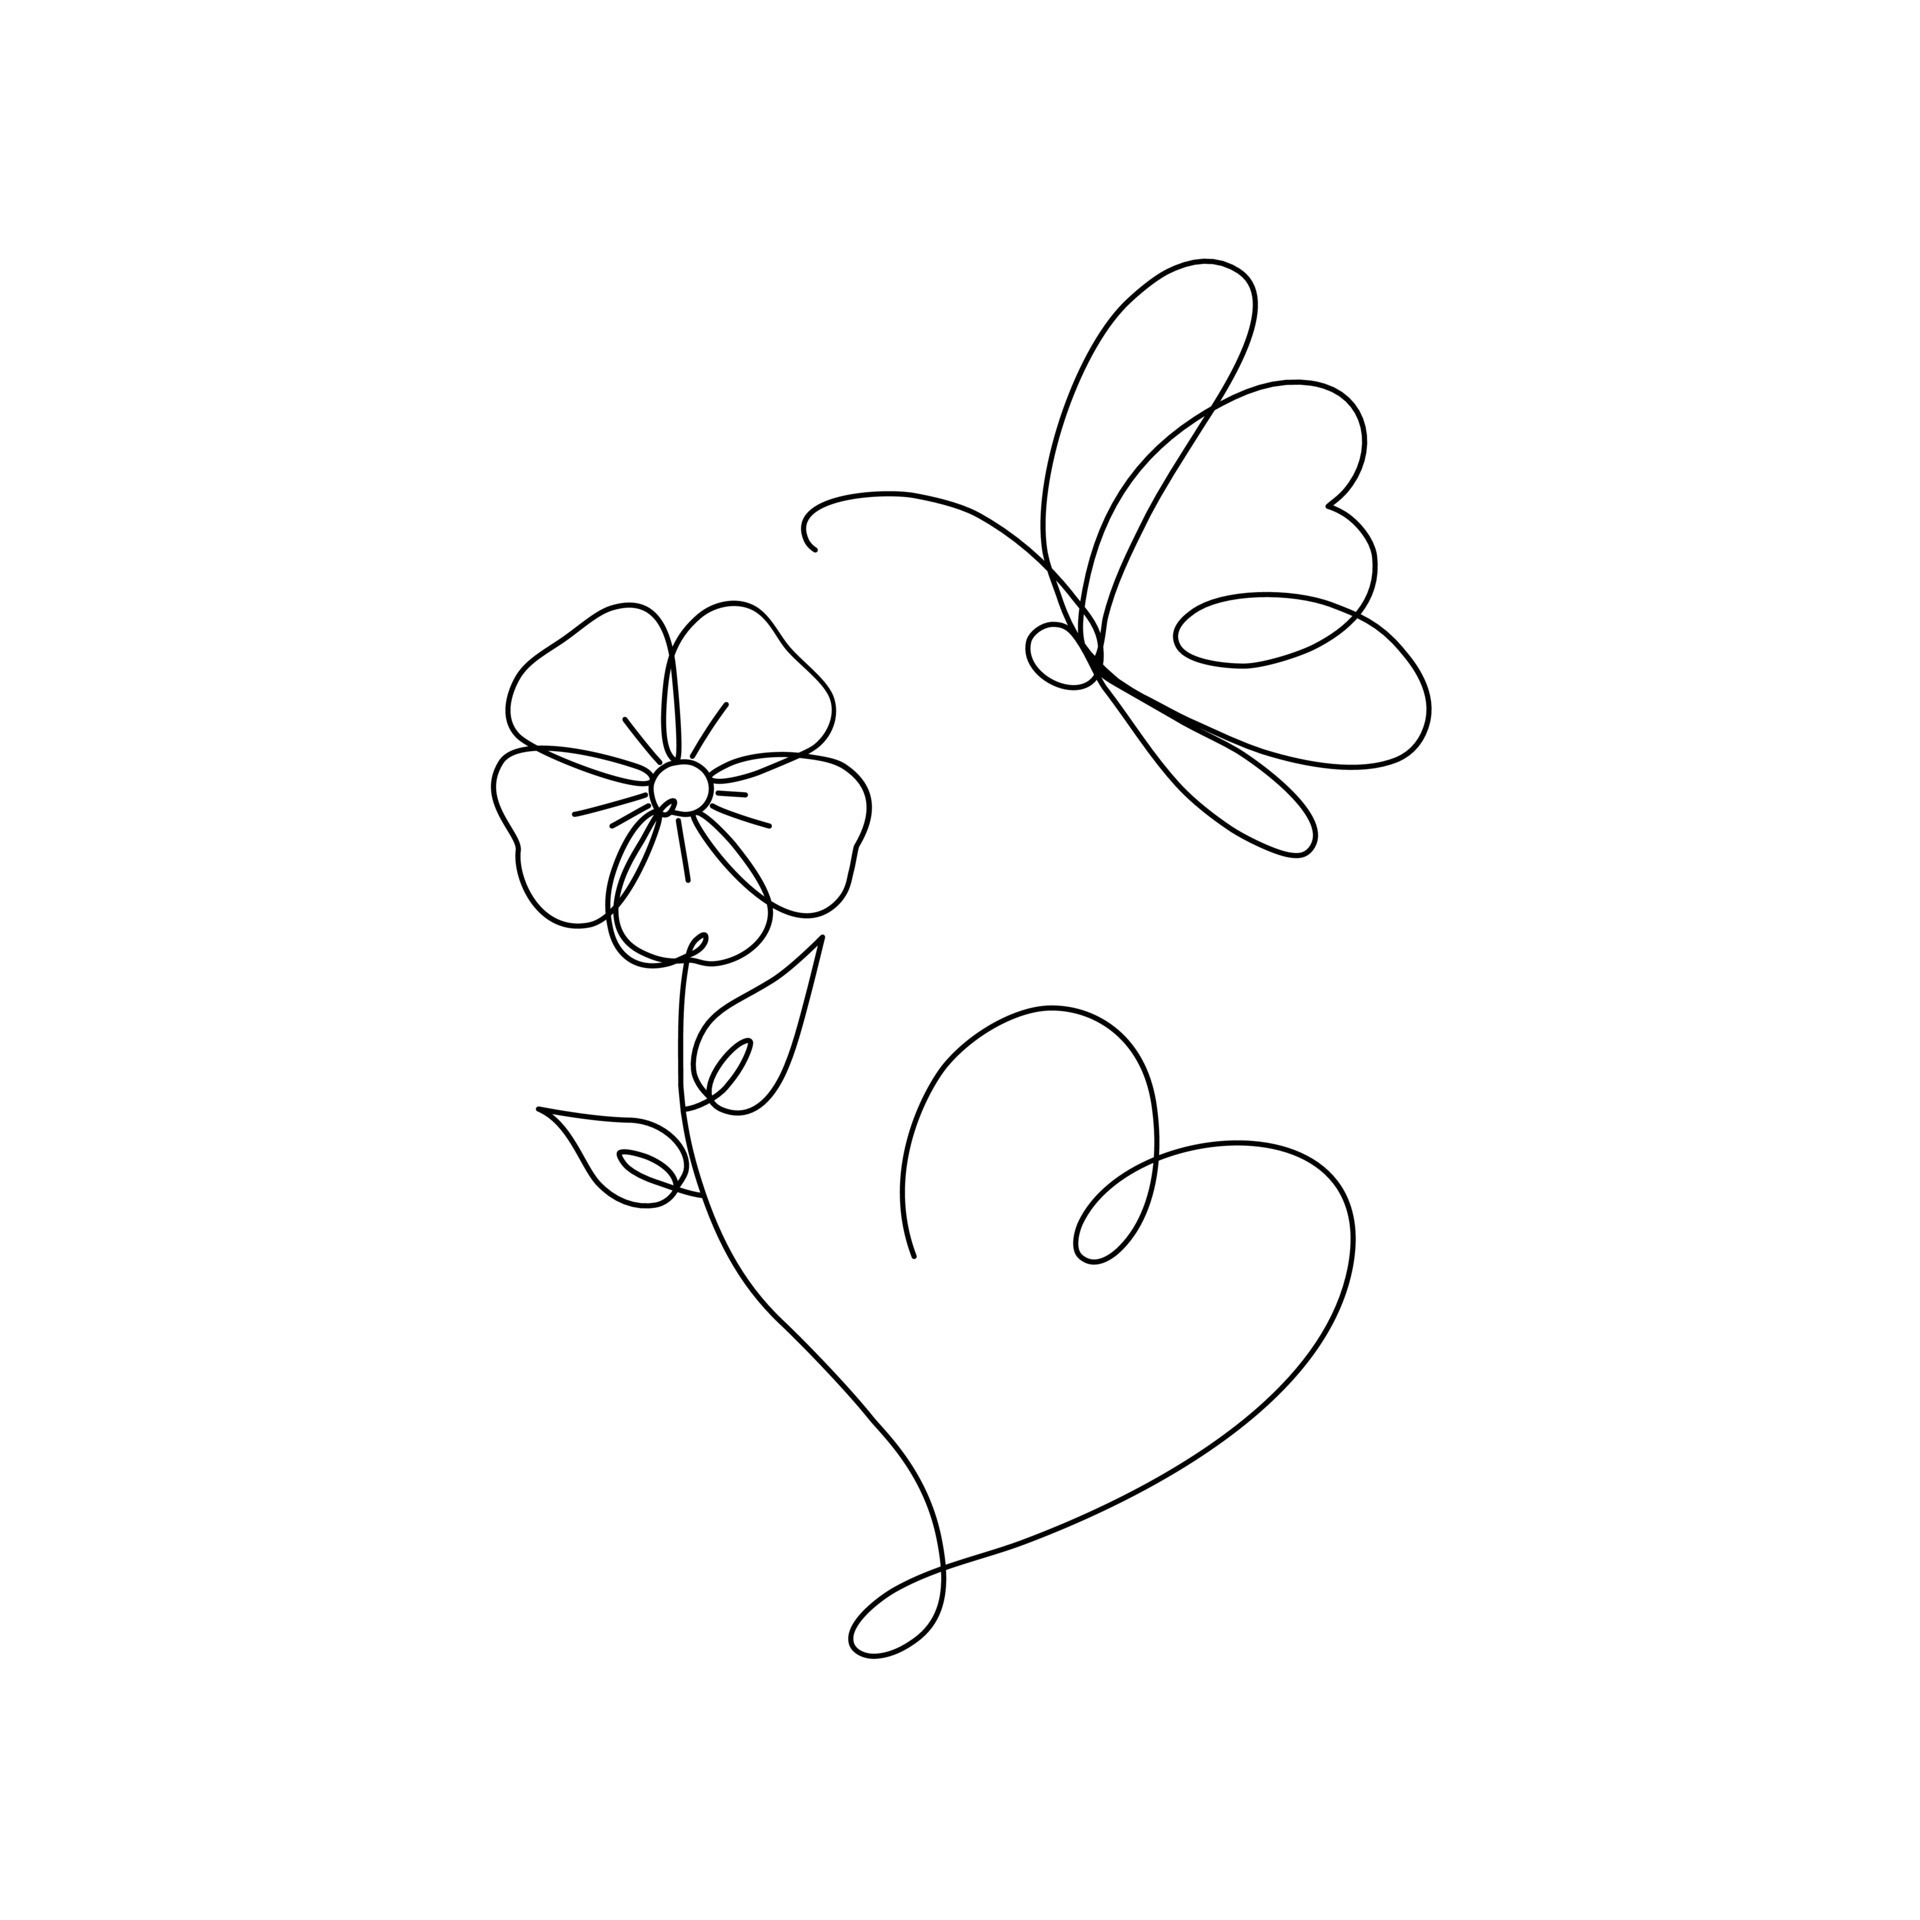 borboleta no jardim de rosas, esboço desenhado à mão para livro de colorir  adulto 2384798 Vetor no Vecteezy